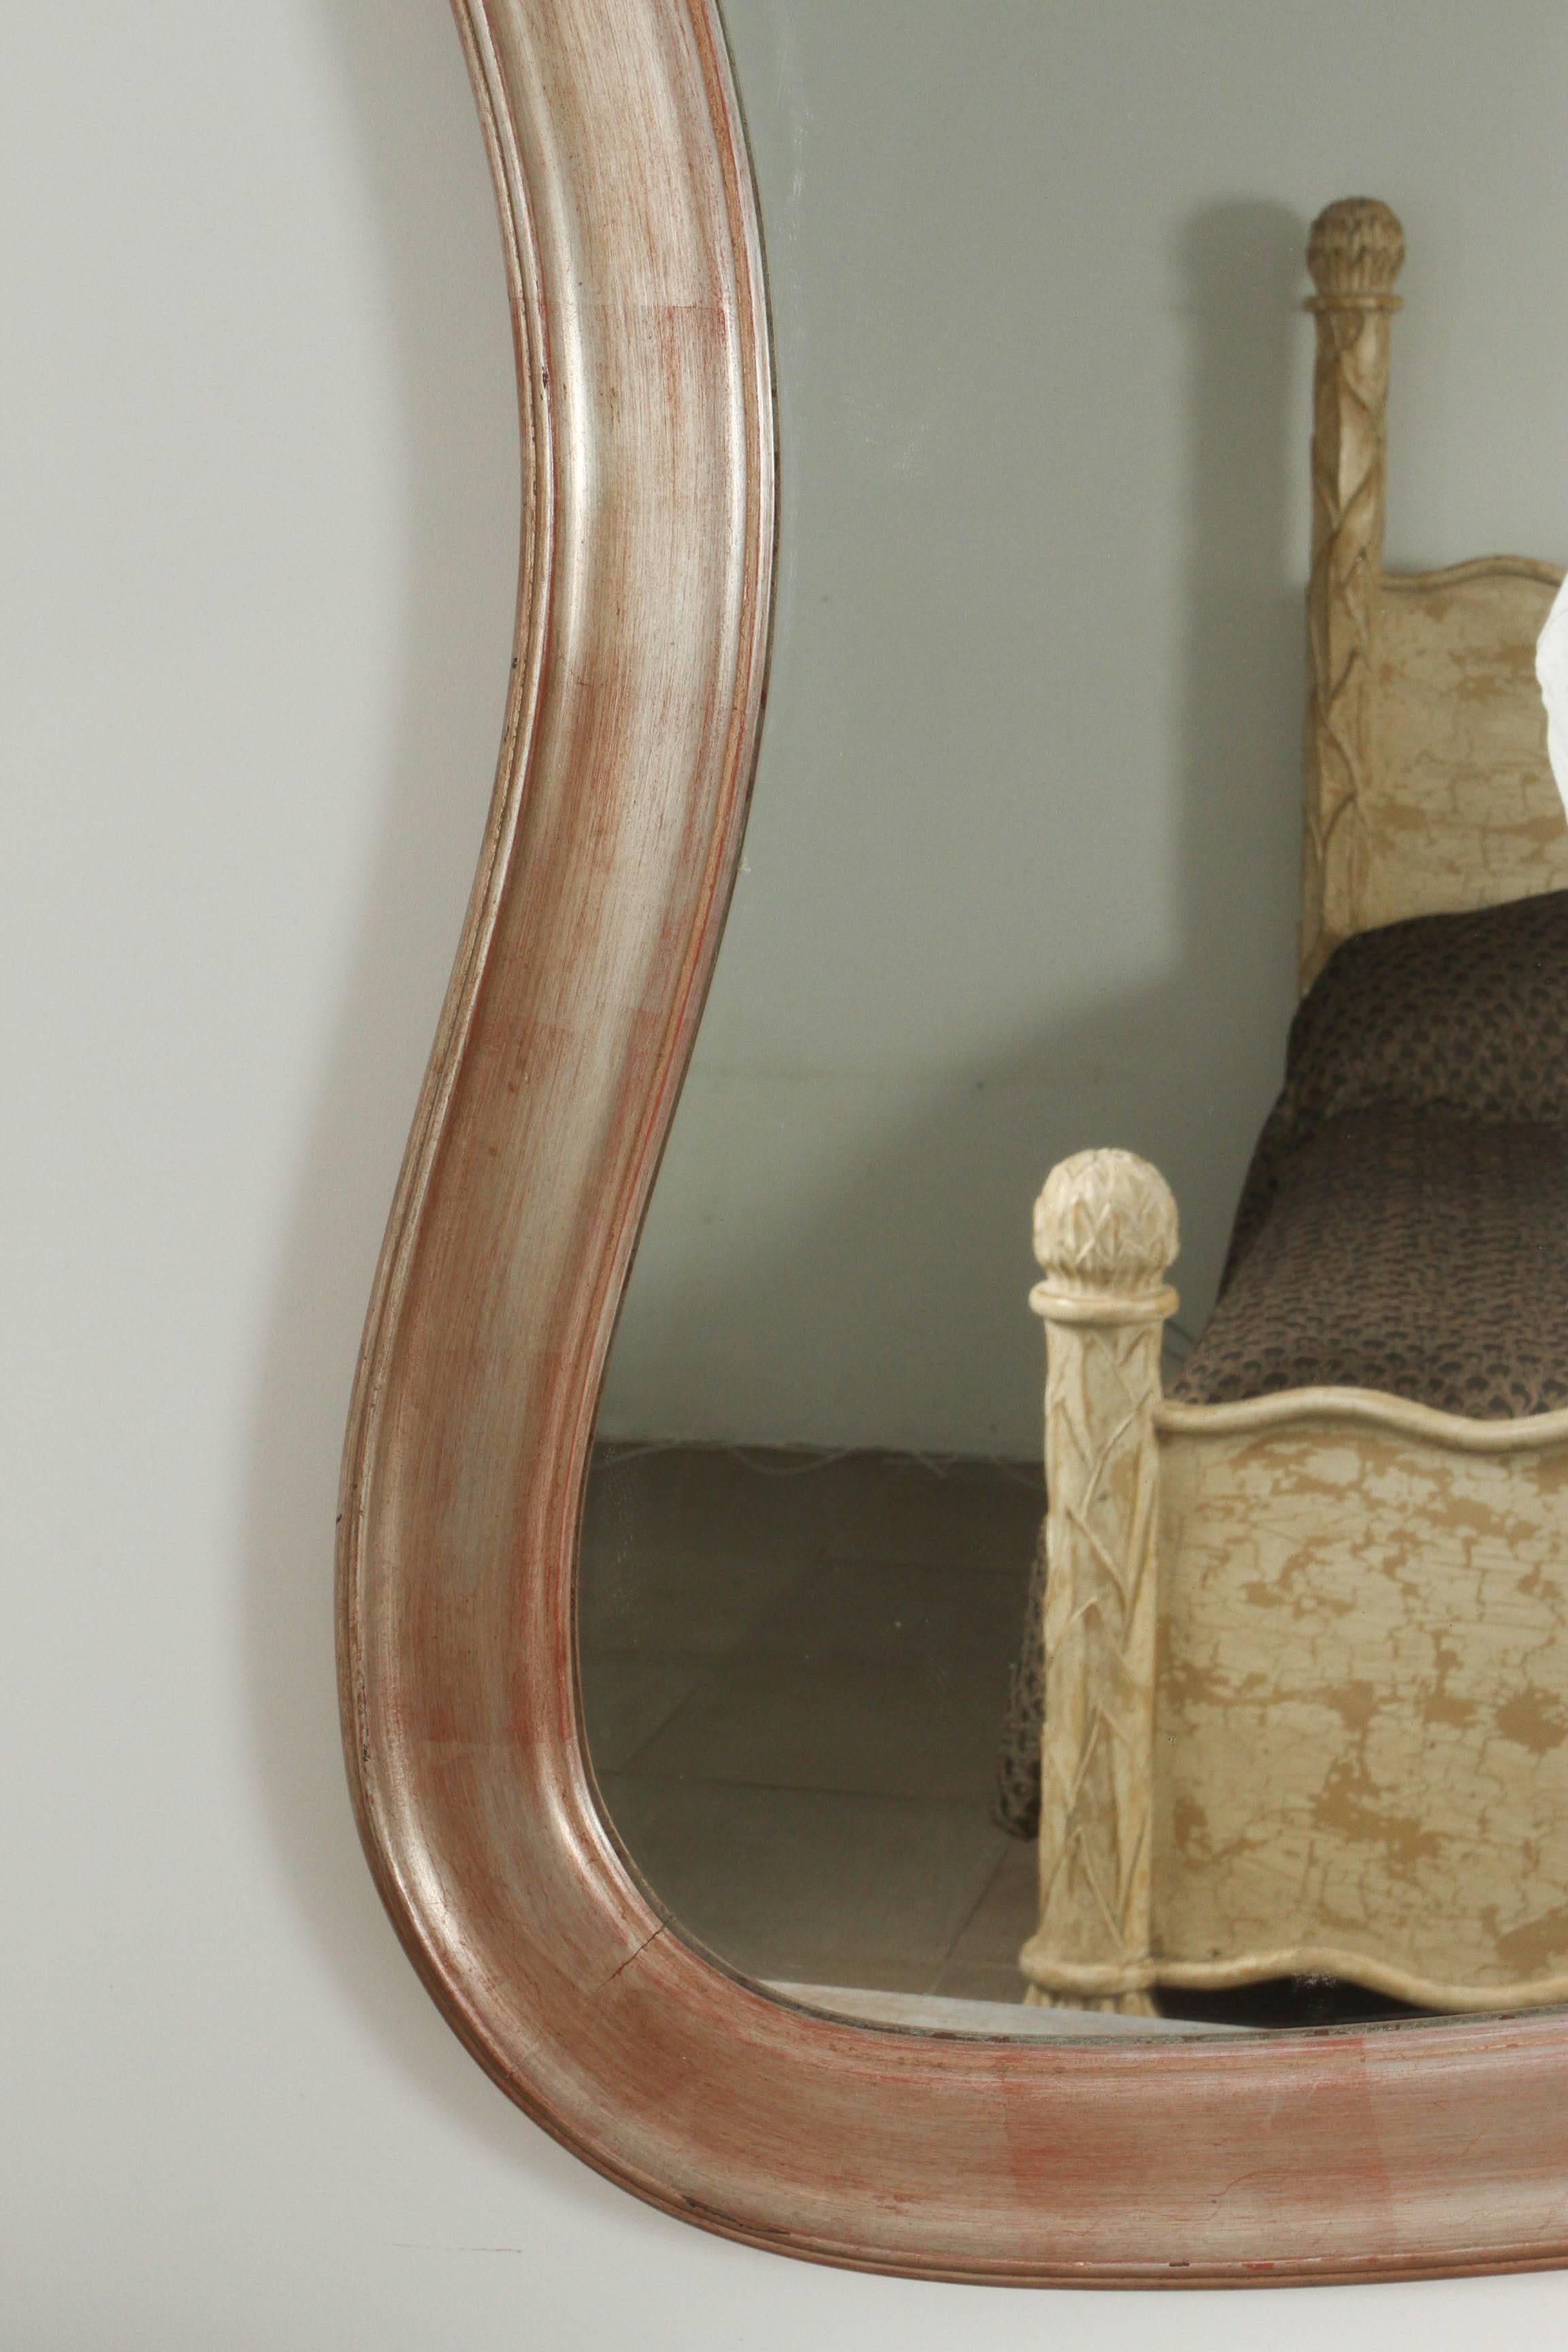 Exquis et rare miroir moderne rococo par James Mont.
Ce miroir inhabituel possède un cadre ondulé qui a conservé sa finition originale en feuille d'argent.
Magnifique patine avec une usure appropriée correspondant à l'âge.

  